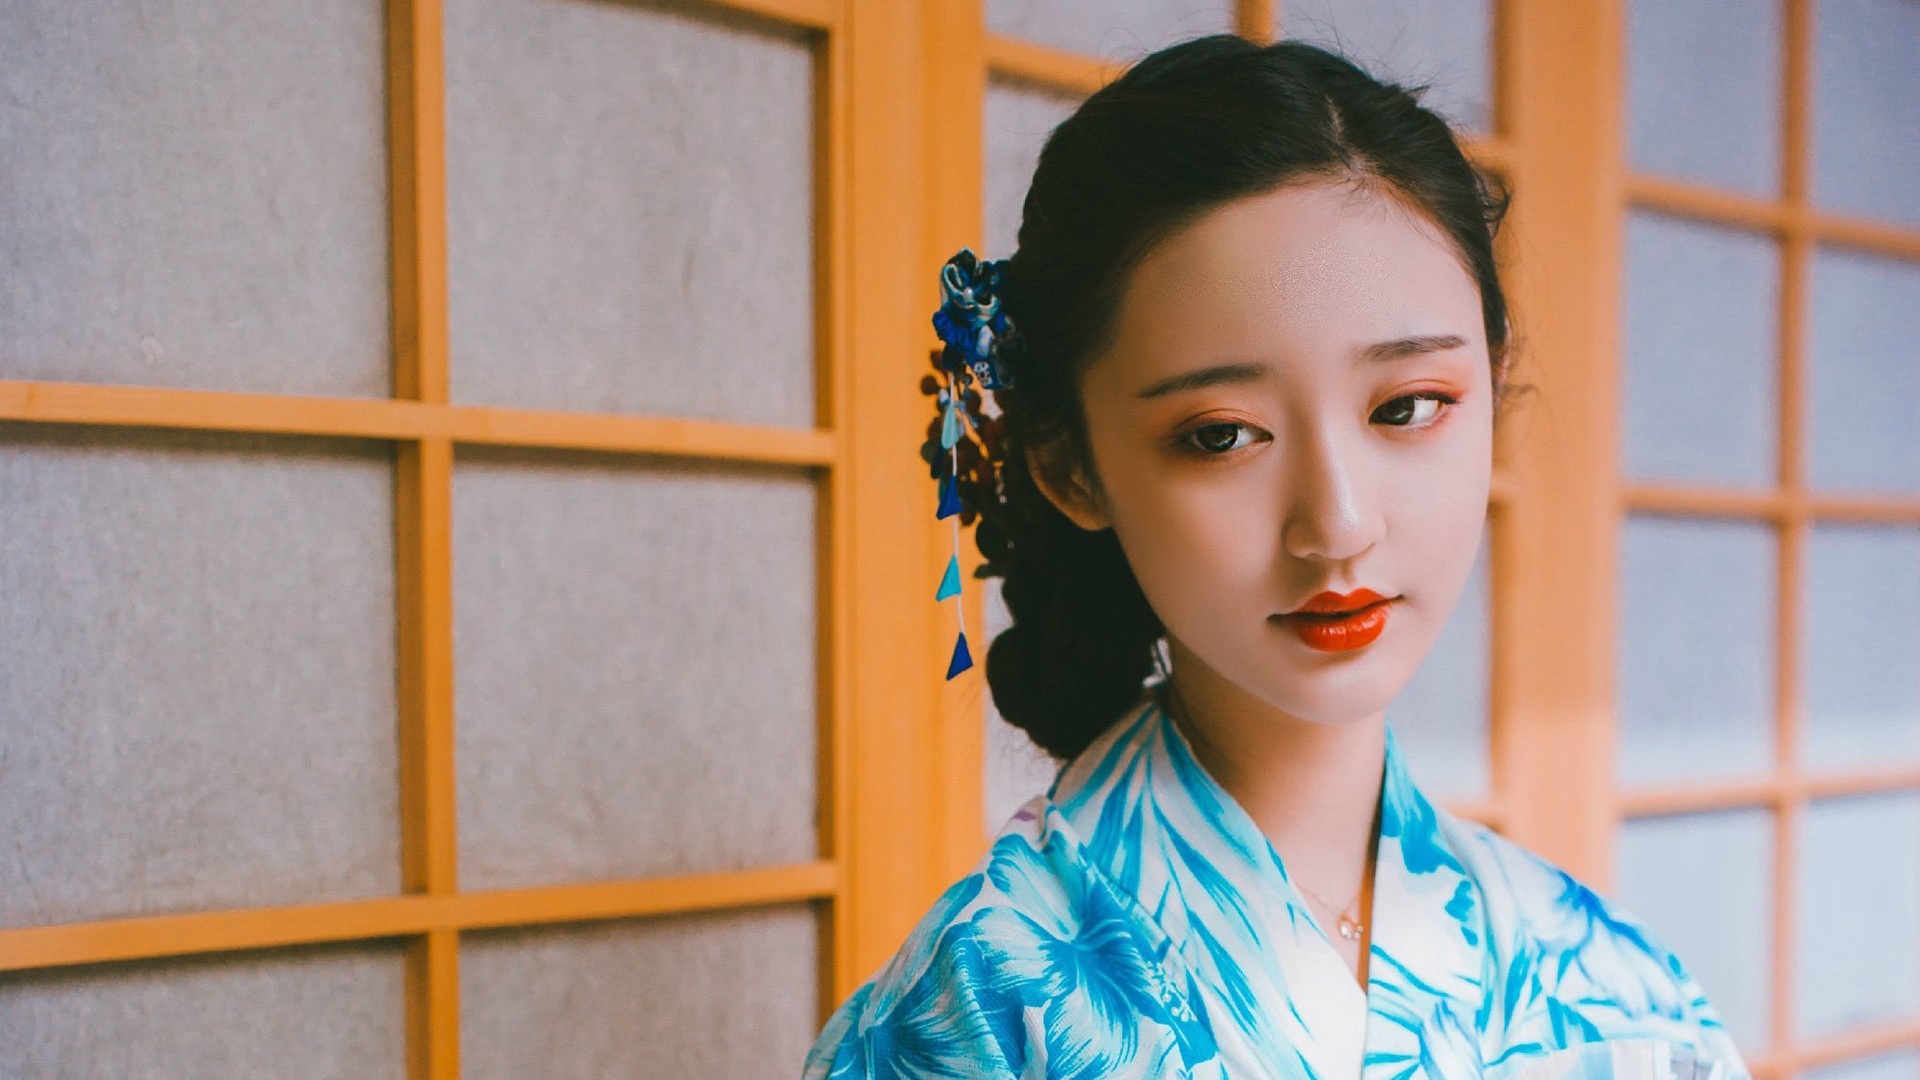 美女欣赏 - 日本和服美女性感制服人体艺术写真